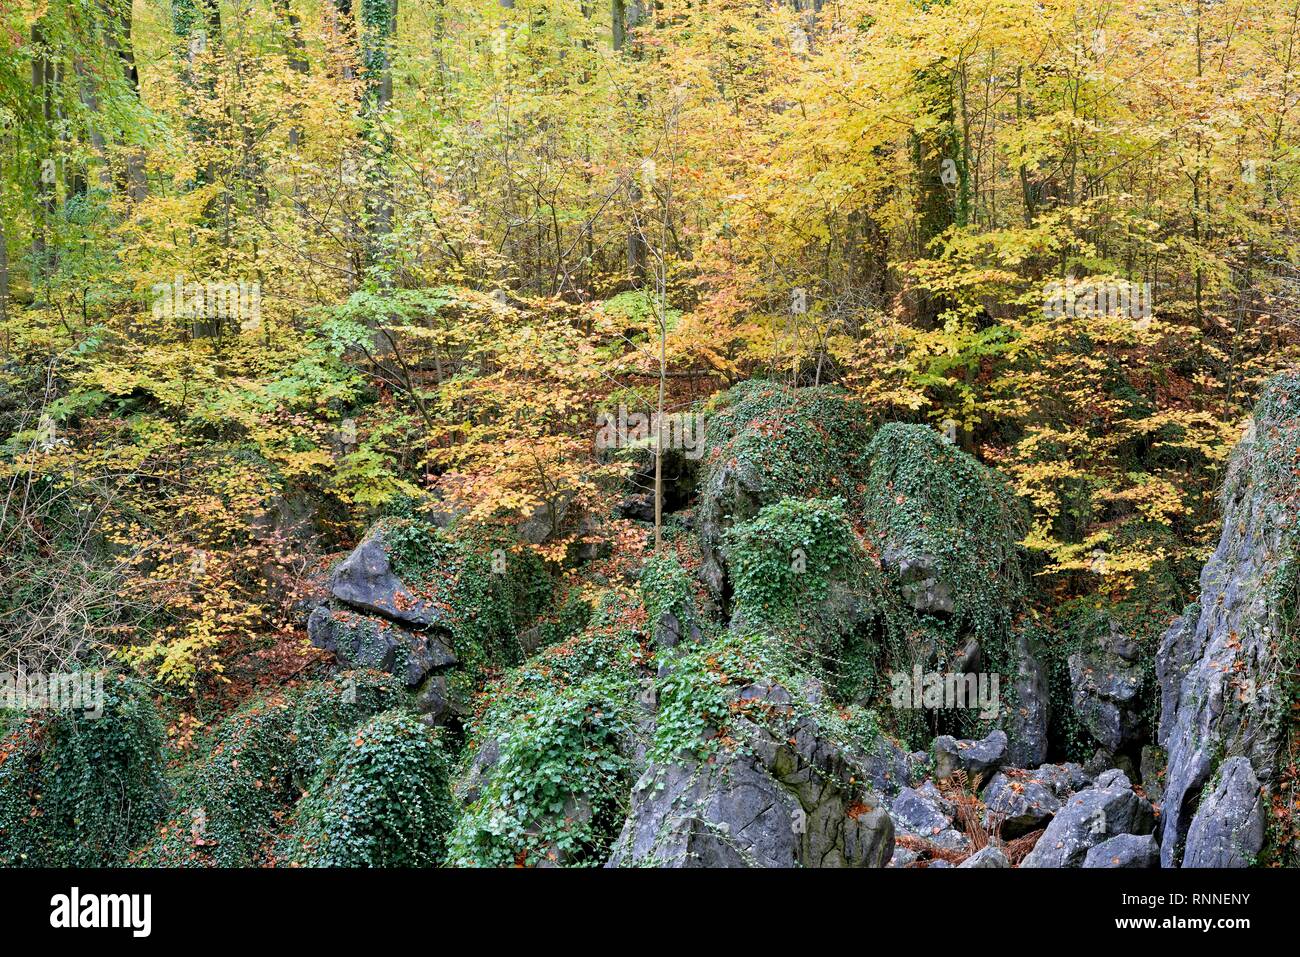 Rochers robuste couverte de lierre (Hedera helix), la forêt de feuillus à l'automne, les hêtres (Fagus sylvatica) Banque D'Images